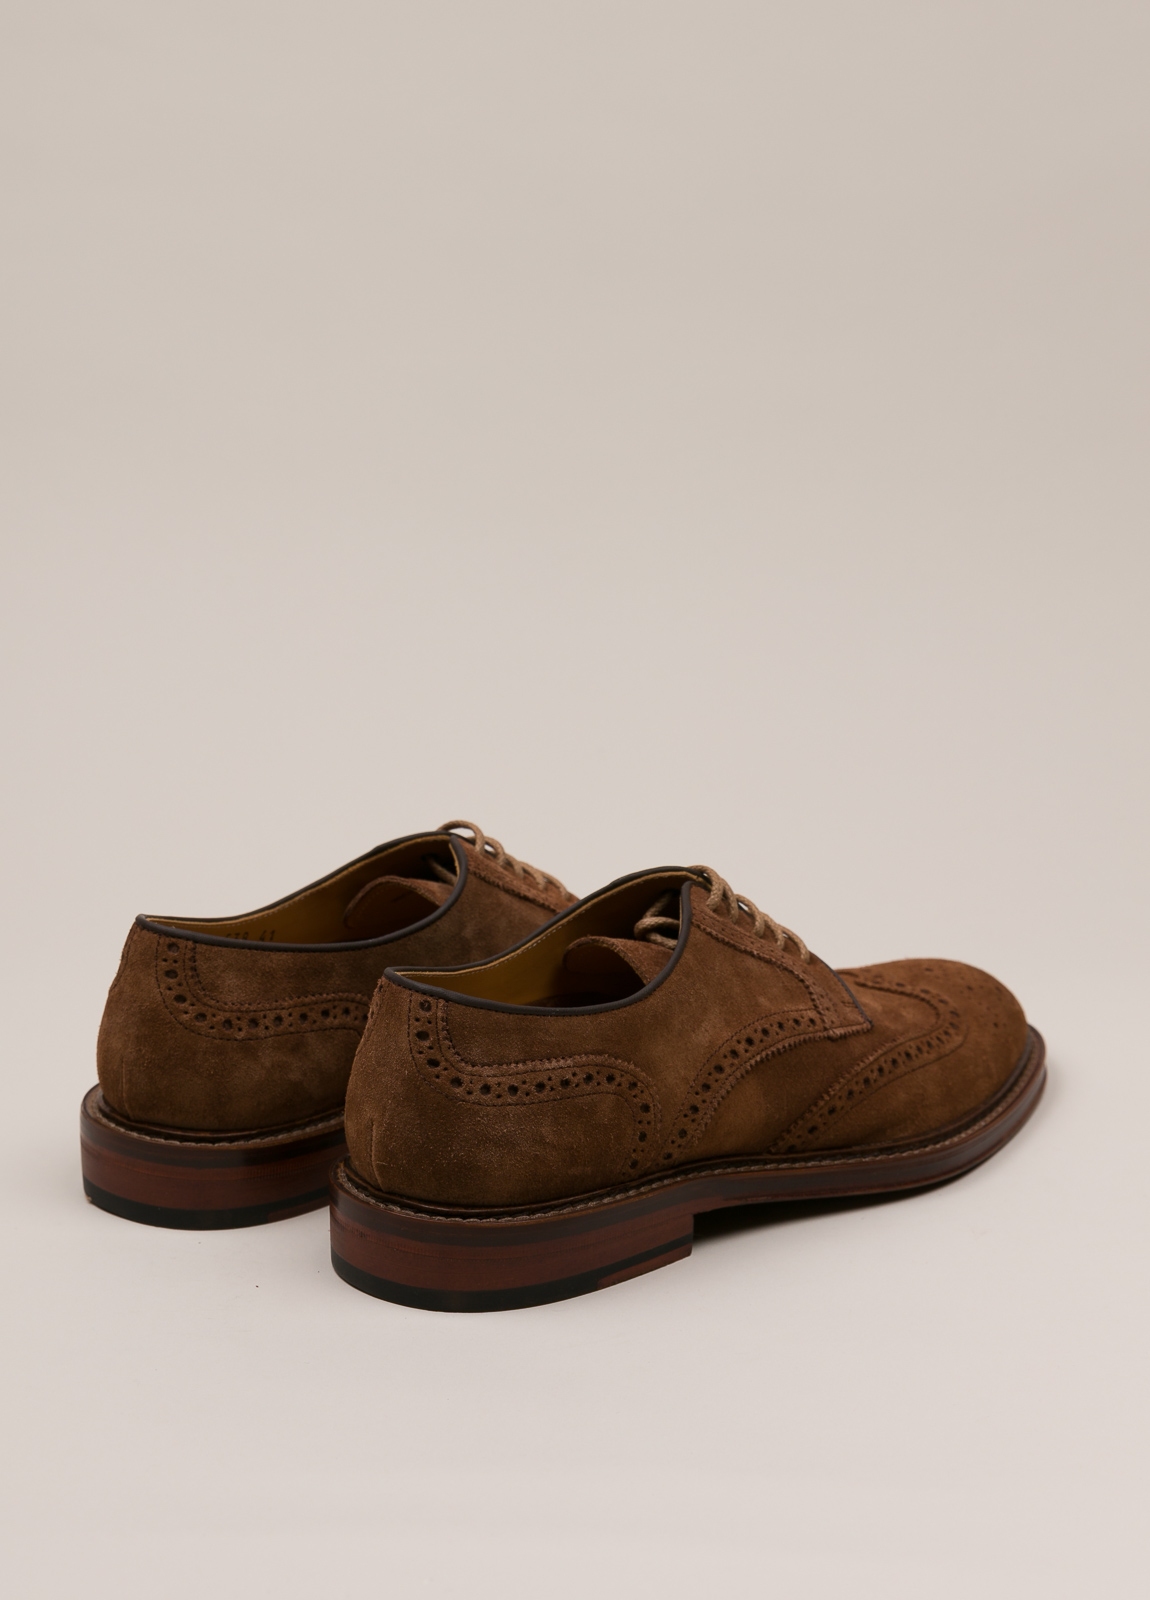 Zapato sport wear furest colección marrón - Ítem1